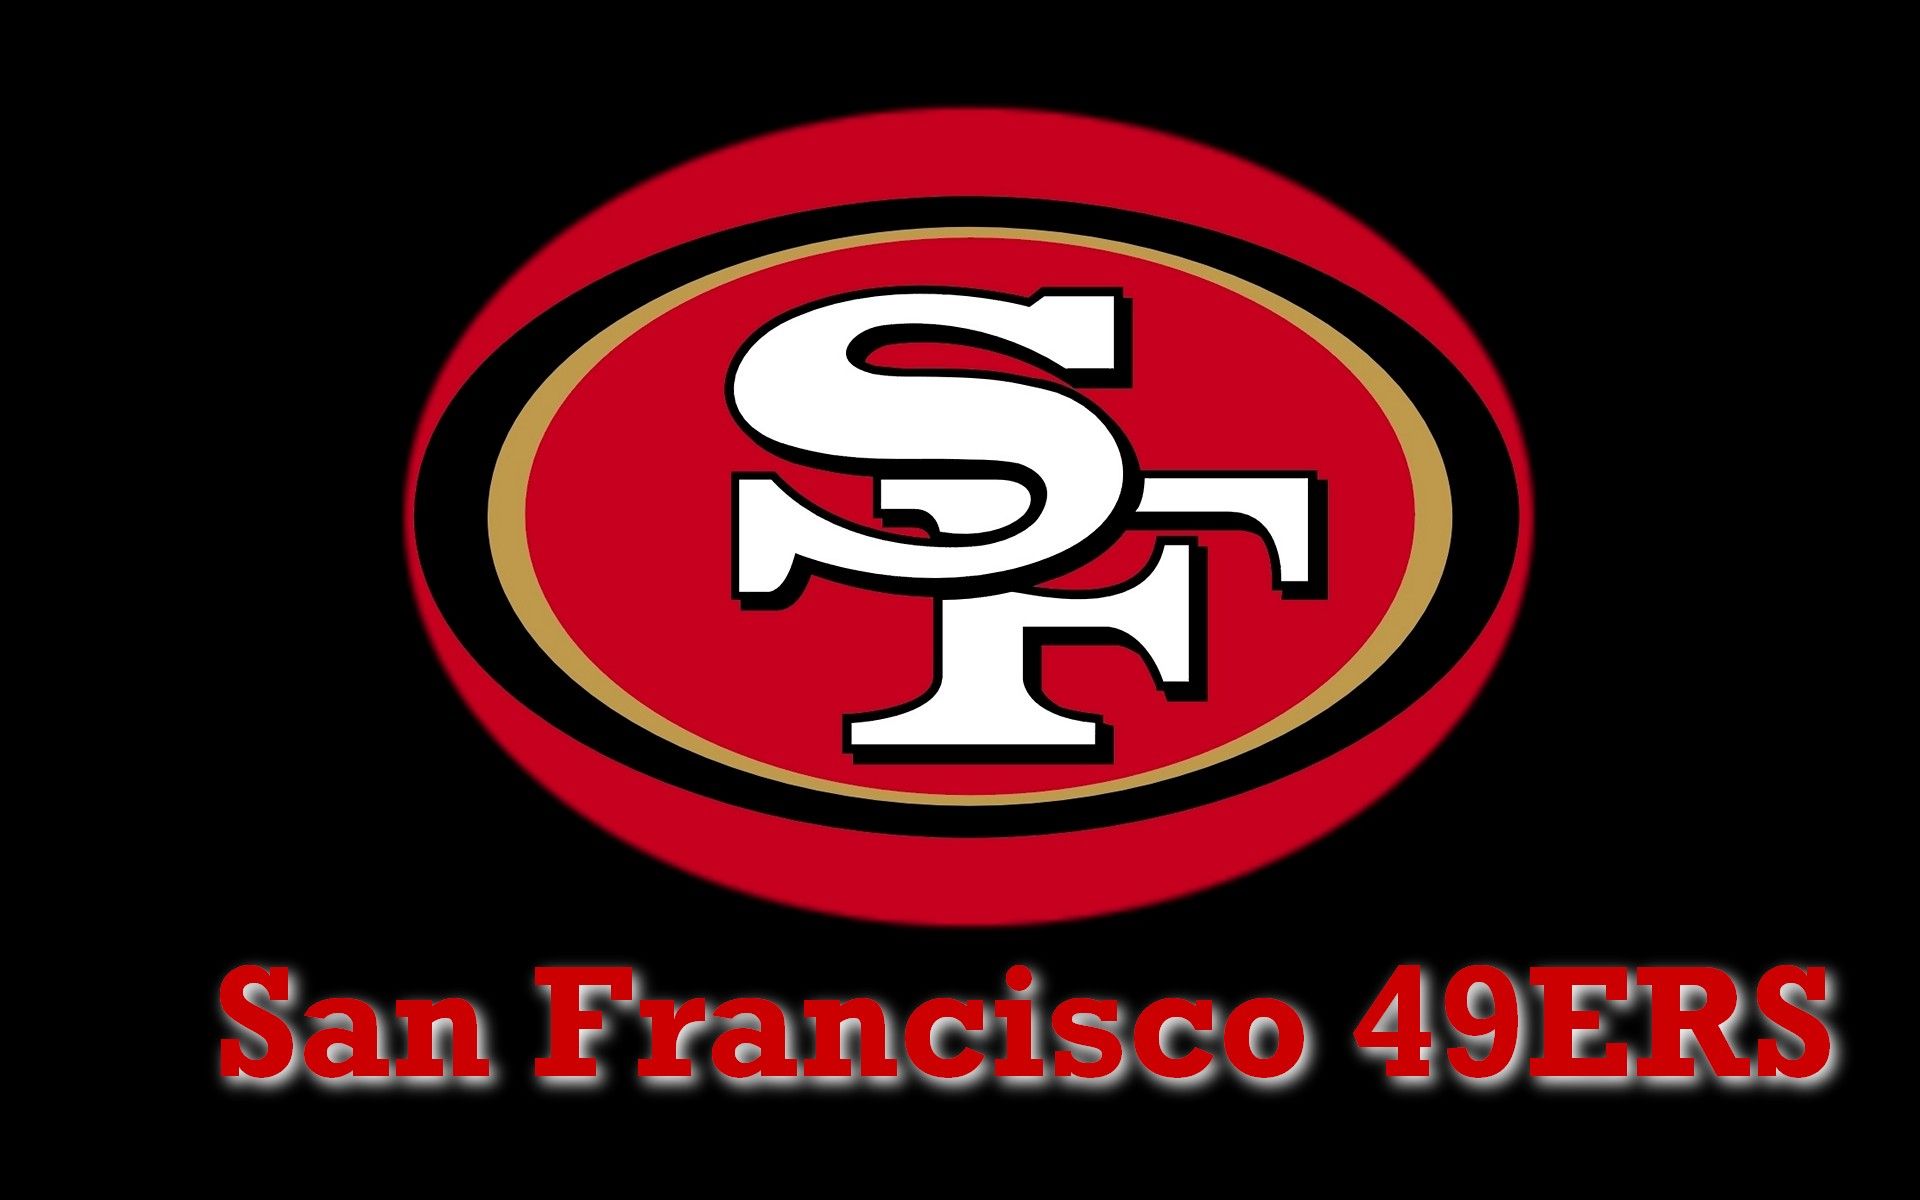 San Francisco 49ers Logo On Black Background 1920x1200 WIDE NFL ...